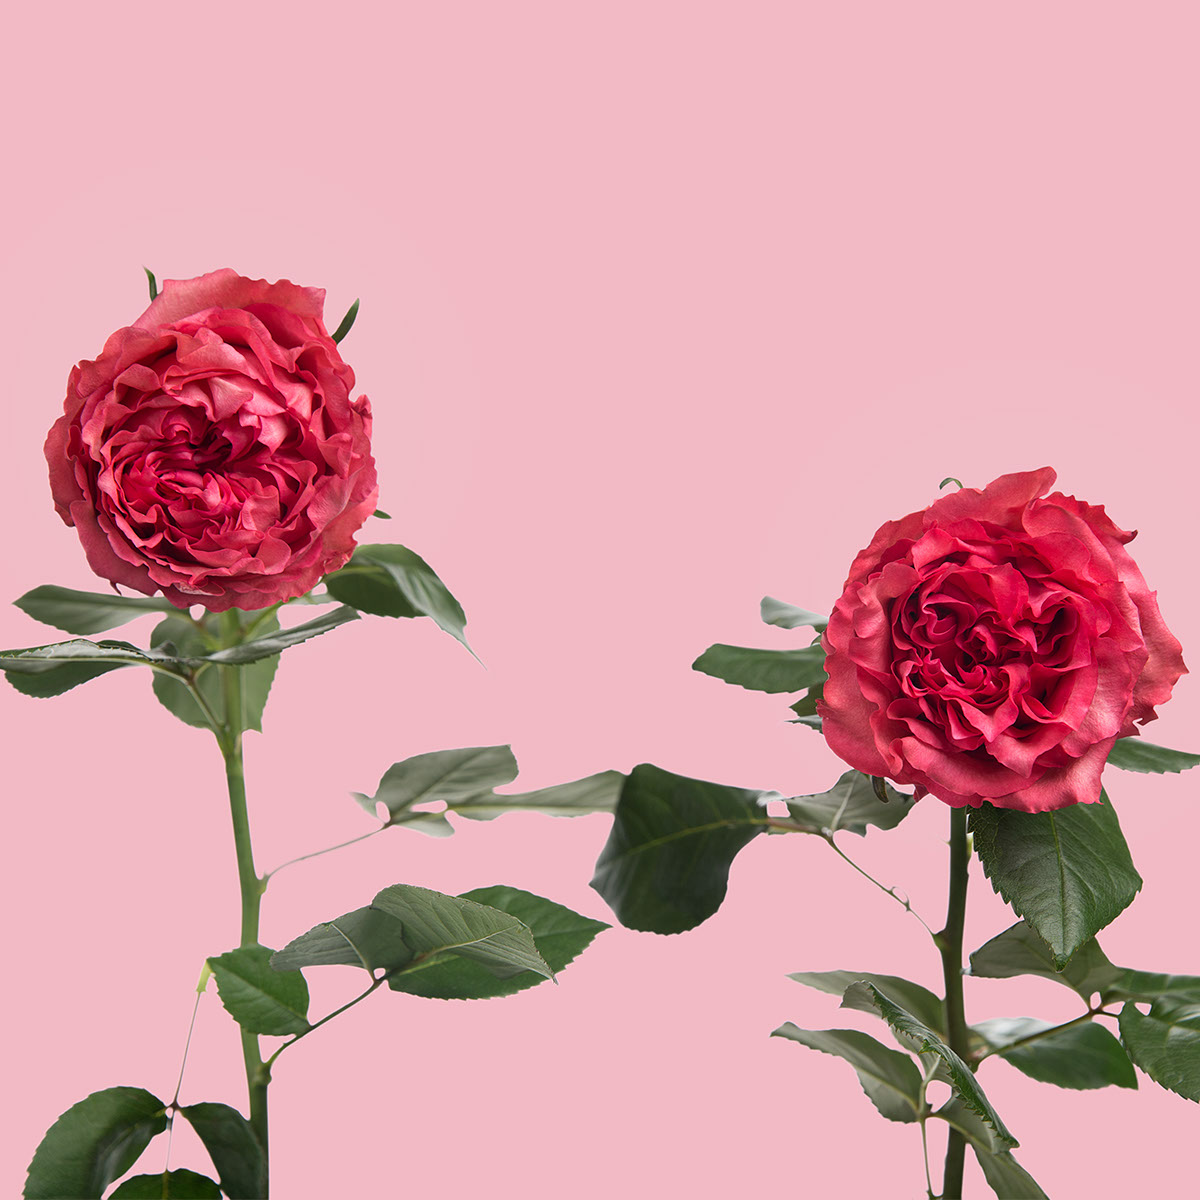 Caralinda Garden Rose